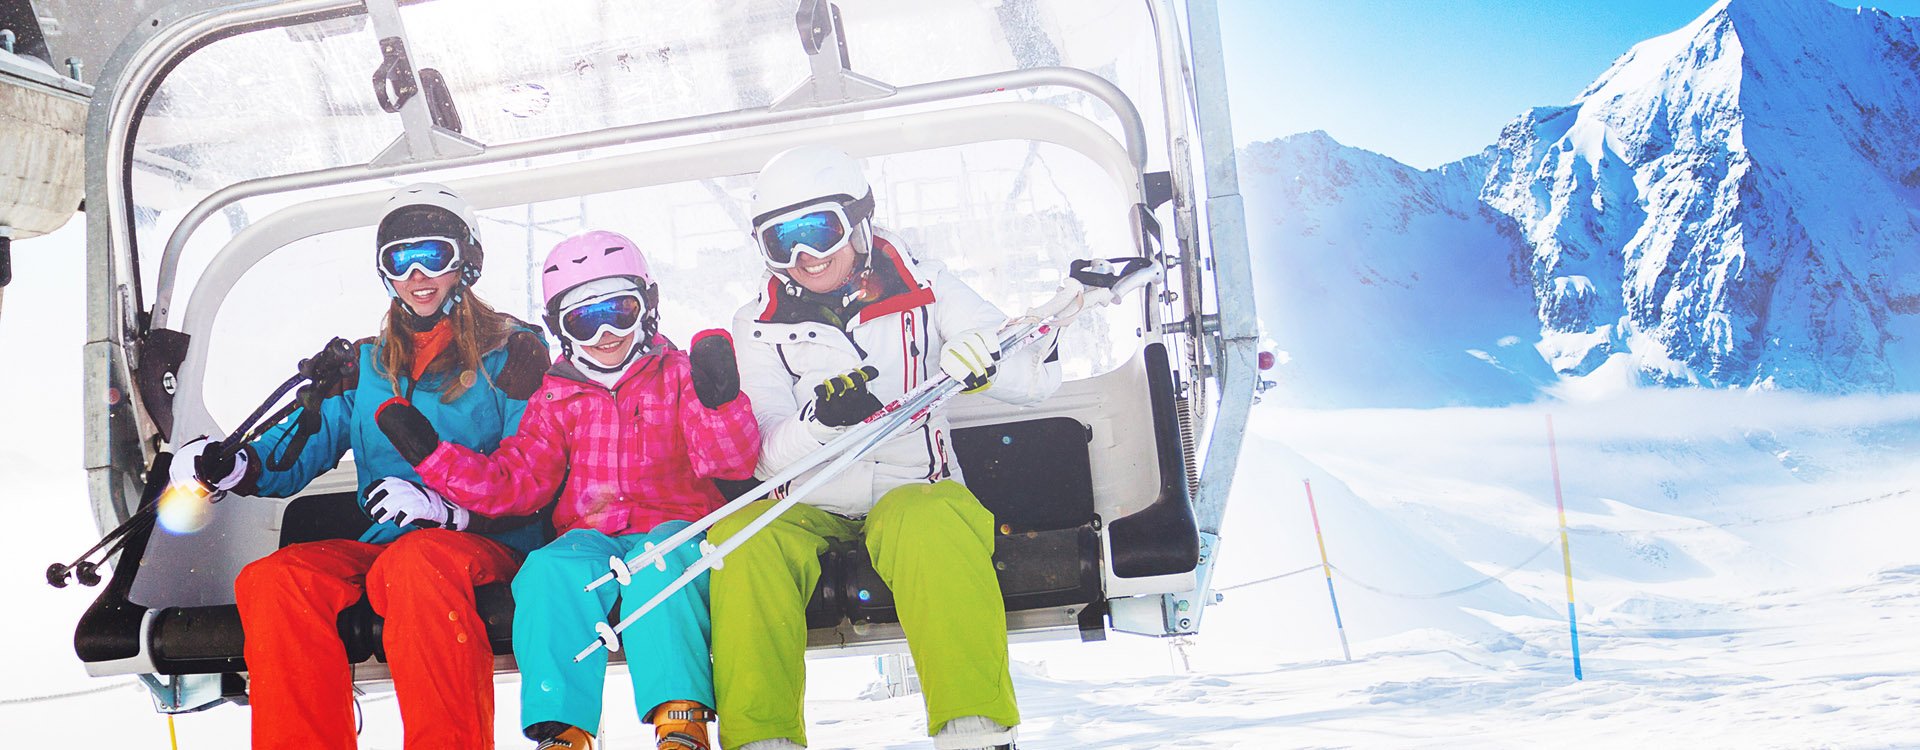 skiers on ski lift